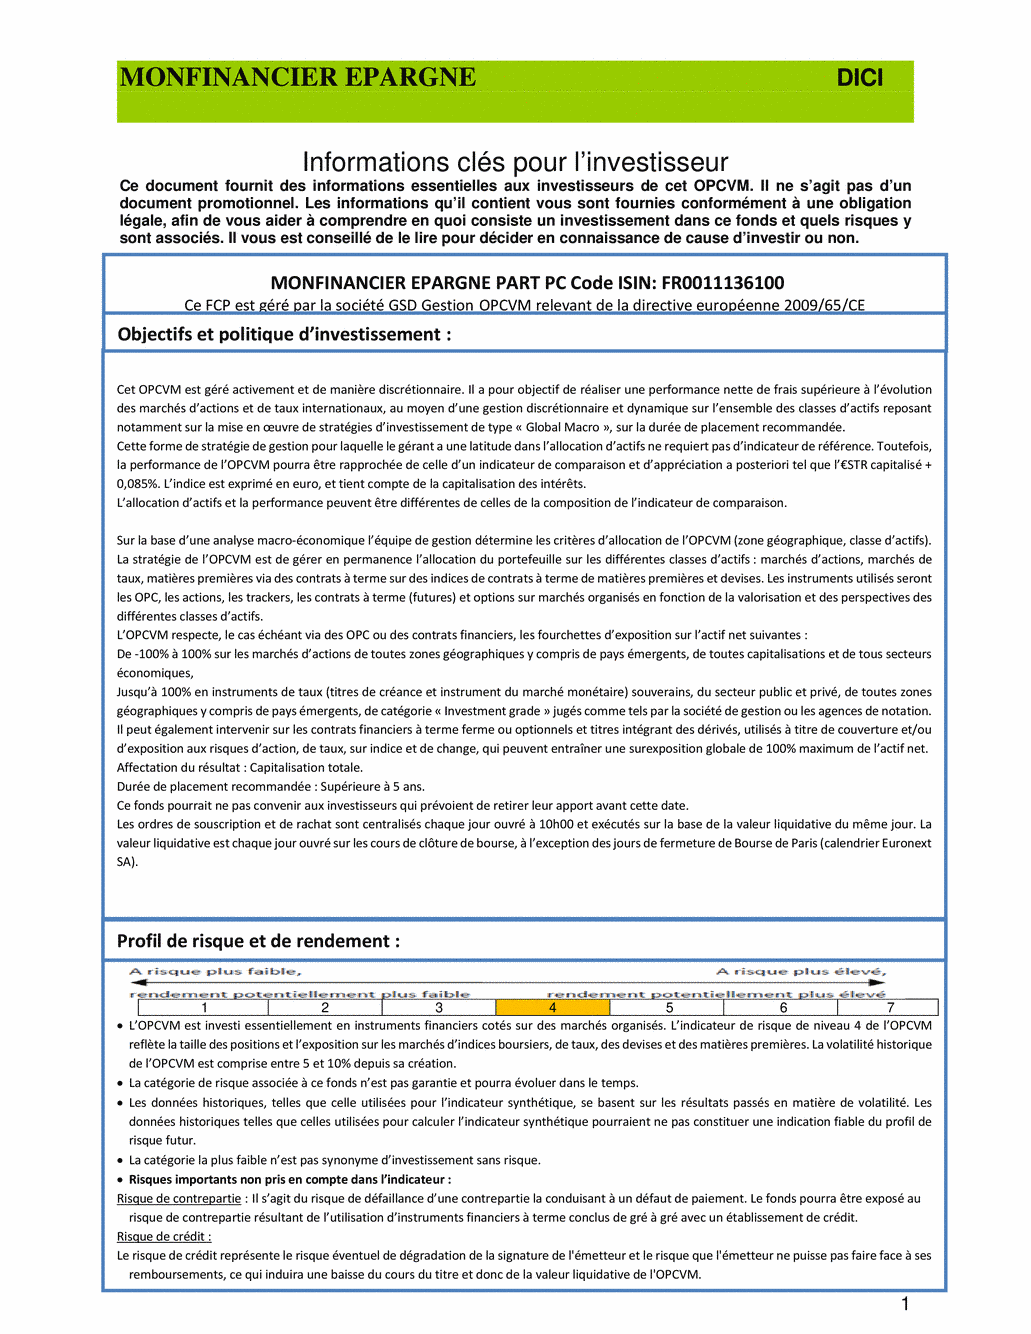 DICI-Prospectus Monfinancier Epargne - 12/05/2021 - undefined